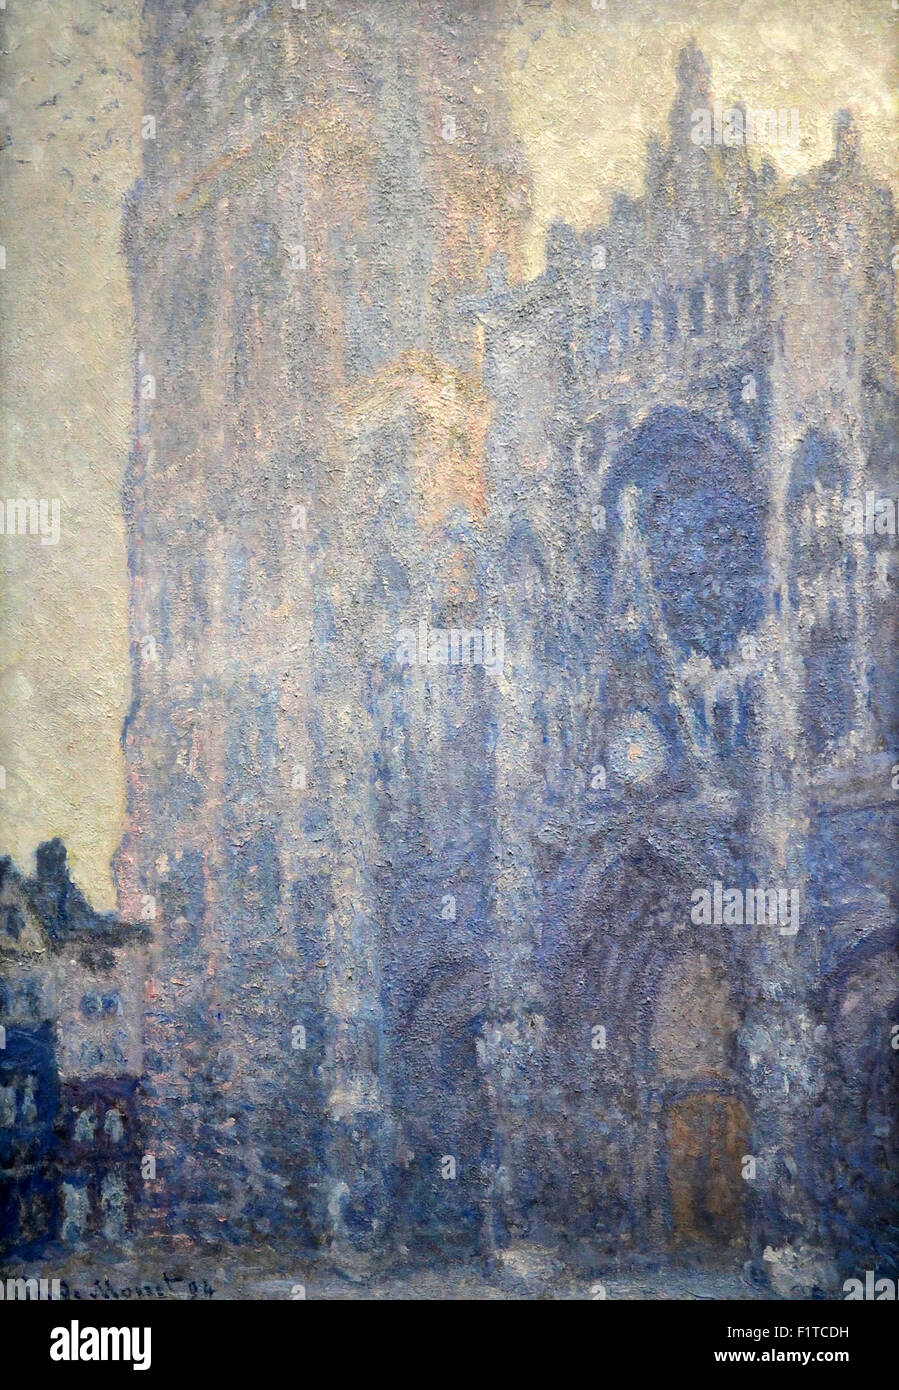 The Rouen Cathedral Le Cathédrale de Rouen 1893 Claude Monet 1840-1926 Stock Photo